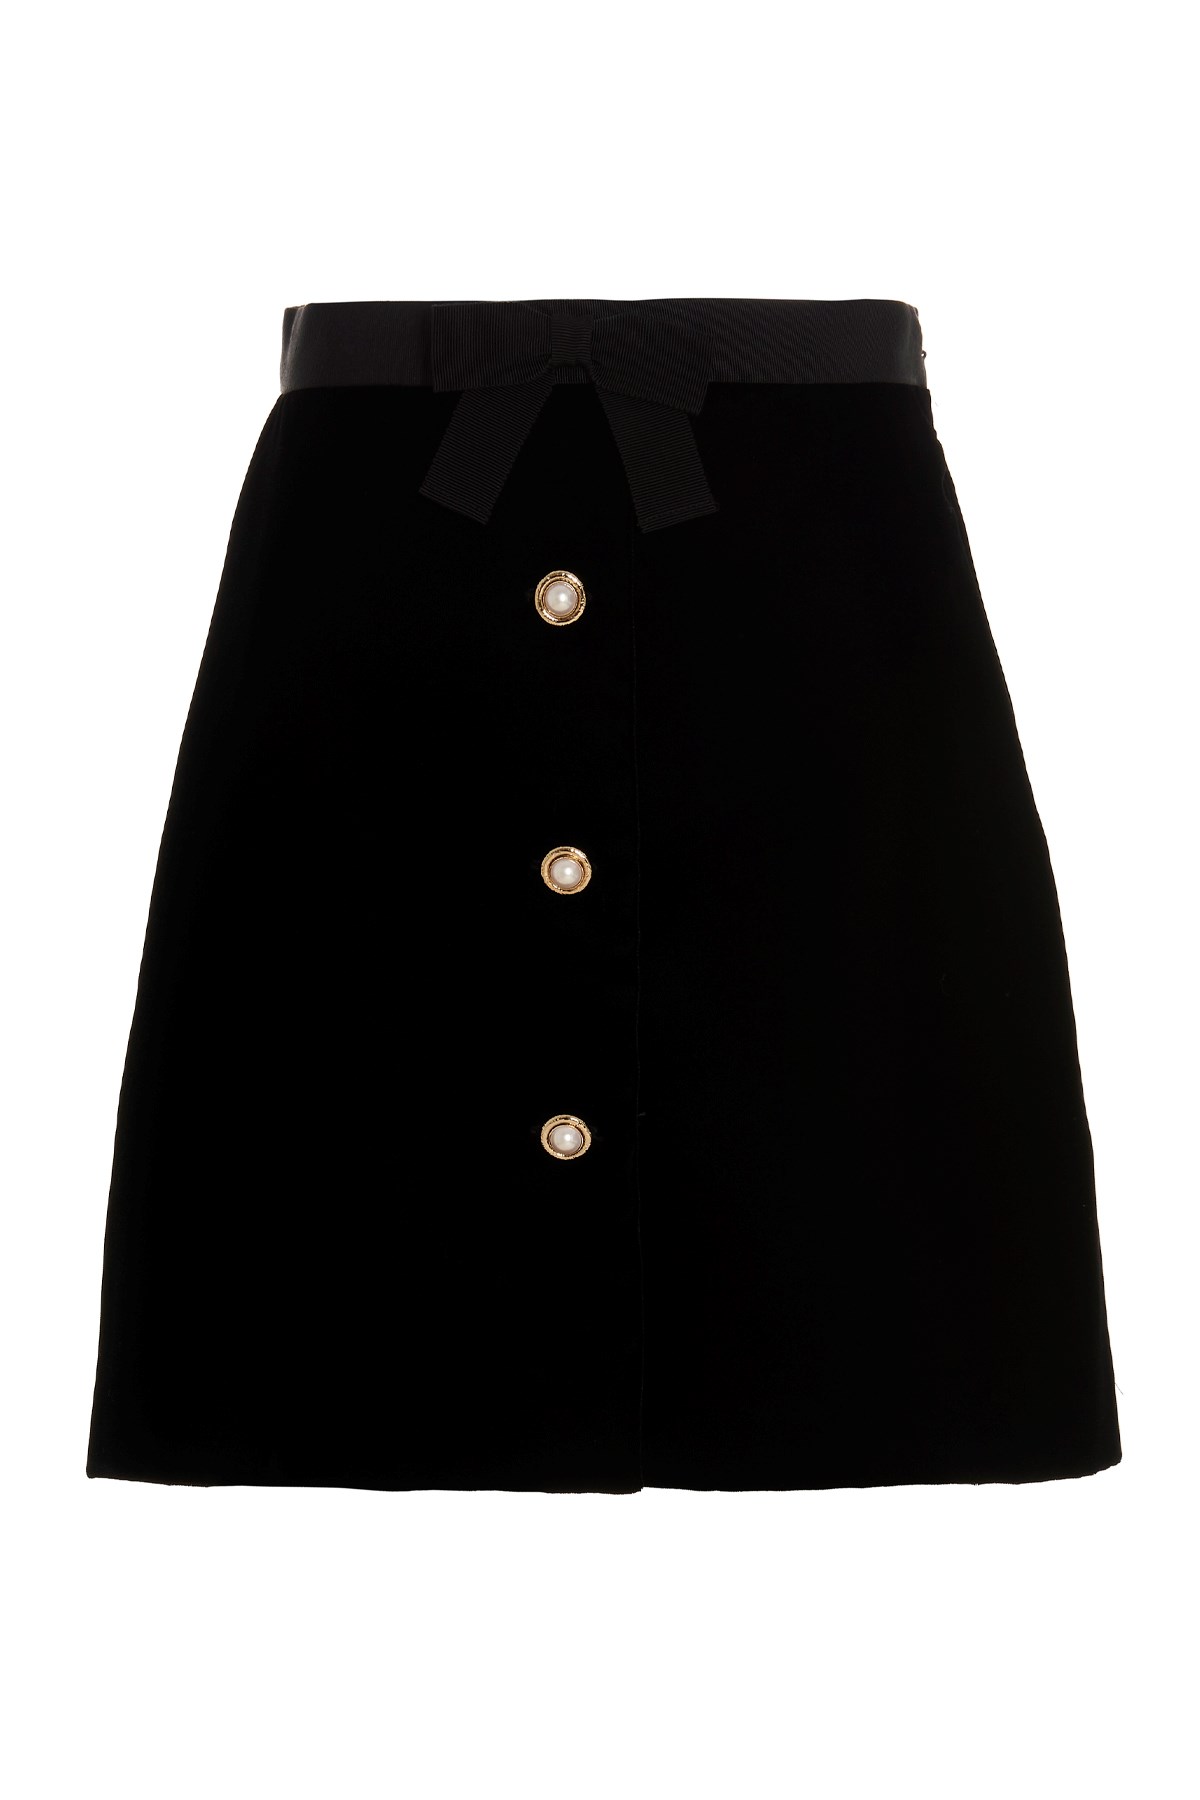 MIU MIU Button Velvet Skirt